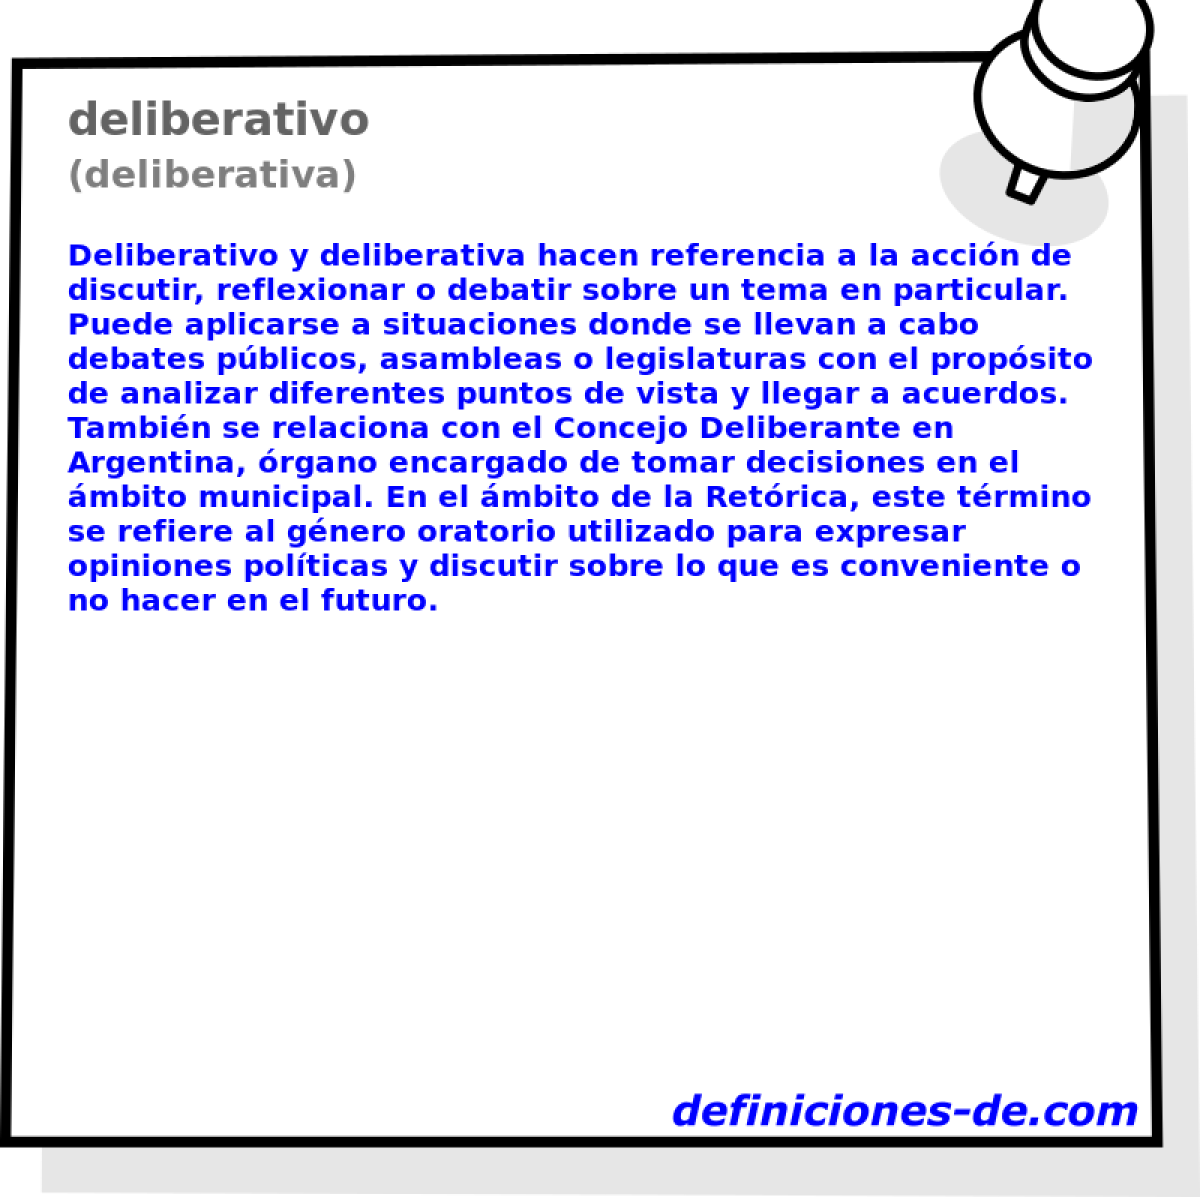 deliberativo (deliberativa)